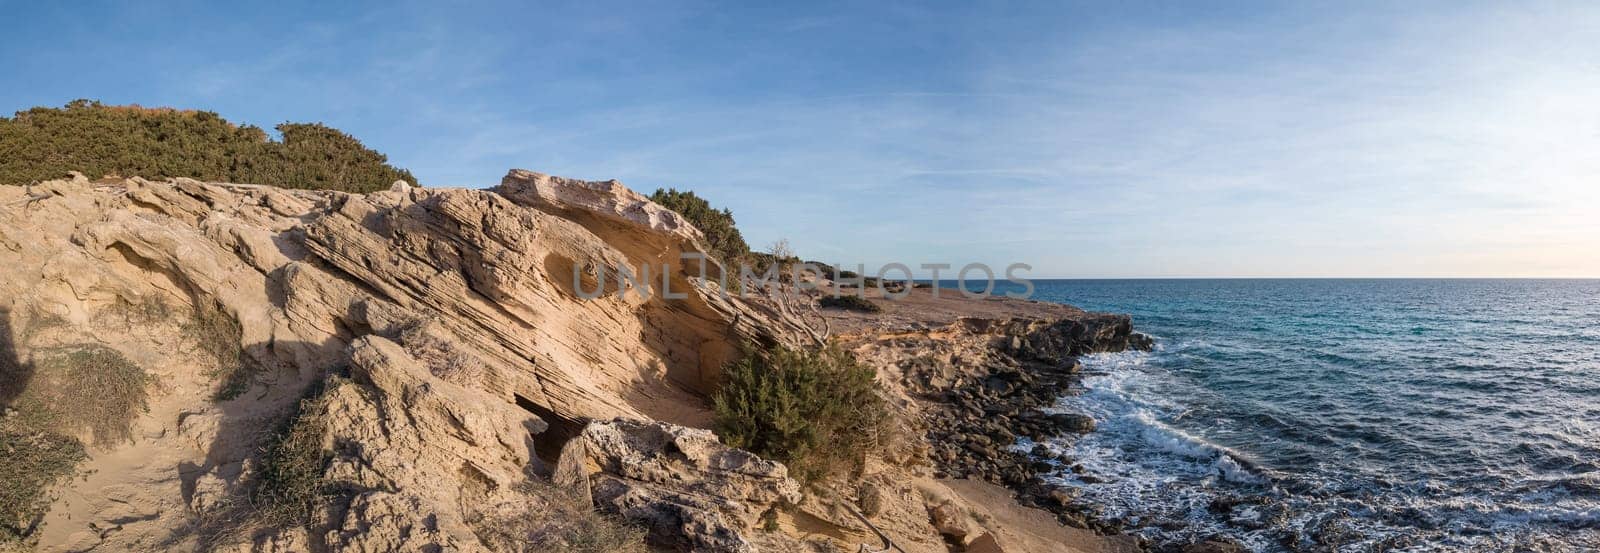 Coastal Erosion Shaping Rugged Landscape at Seaside by FerradalFCG